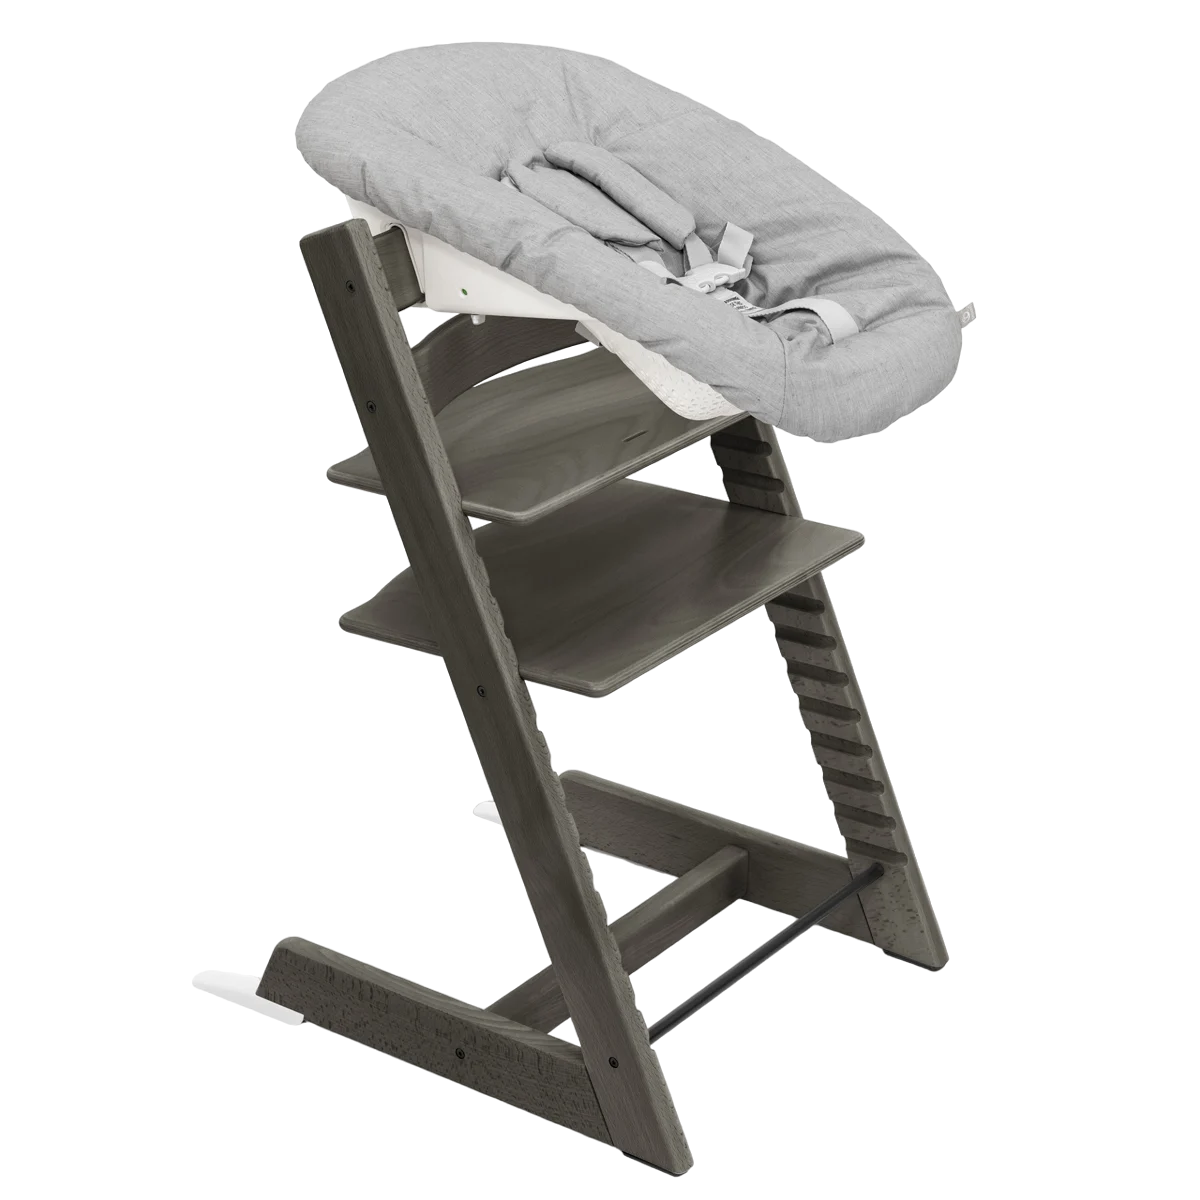 Набор Stokke Newborn Tripp Trapp Hazy Grey: стульчик и кресло для новорожденных (k.100126.52) - фото 1